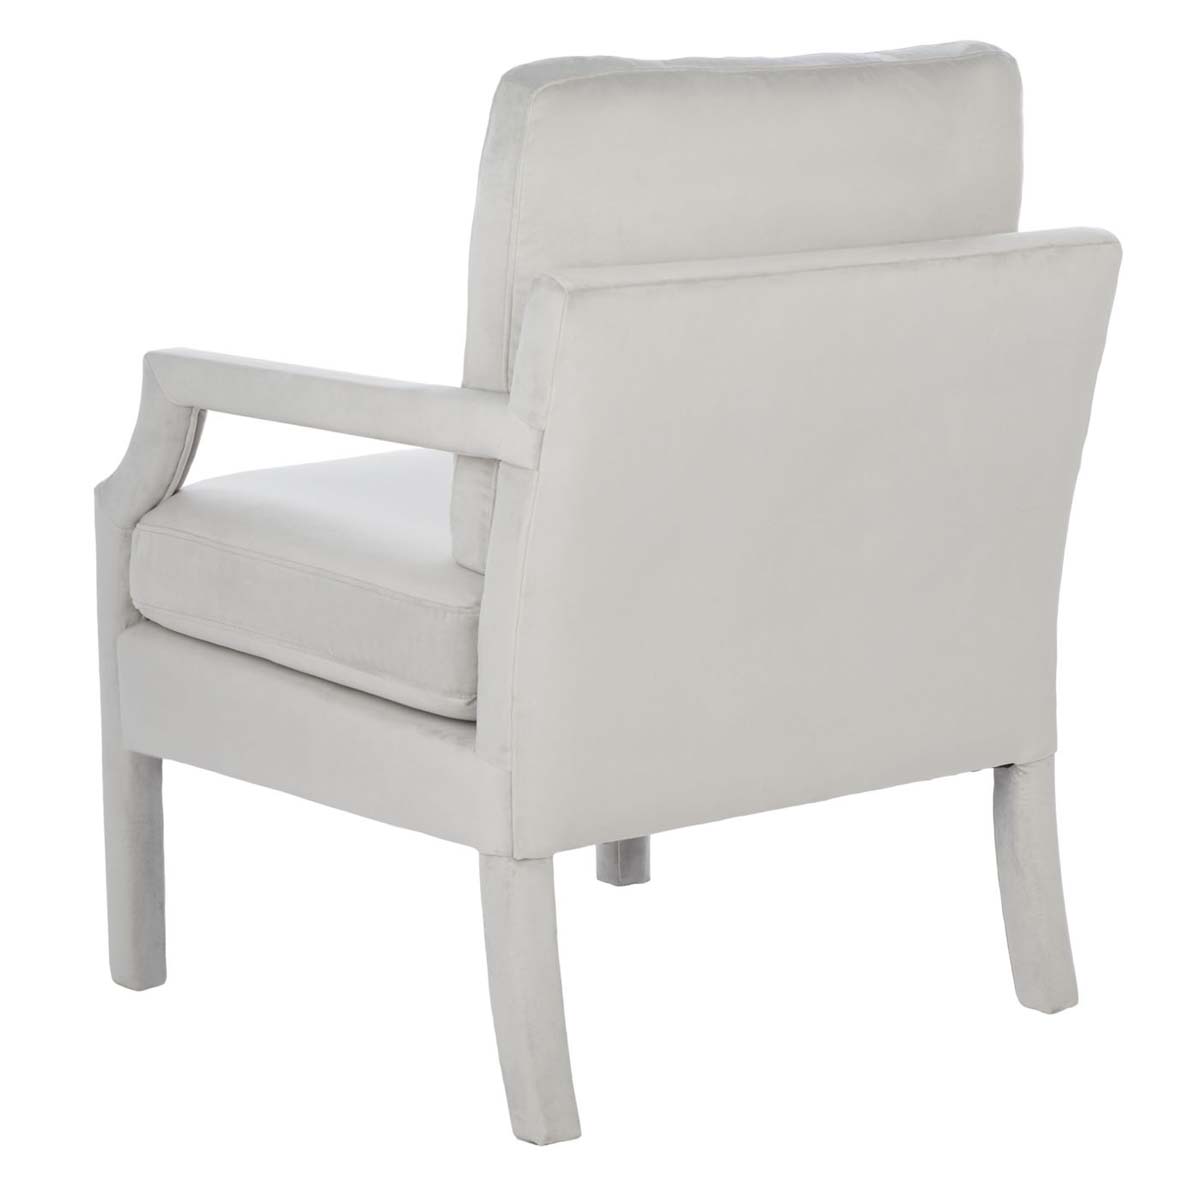 Safavieh Genoa Upholstered Arm Chair , ACH4510 - Light Grey Velvet